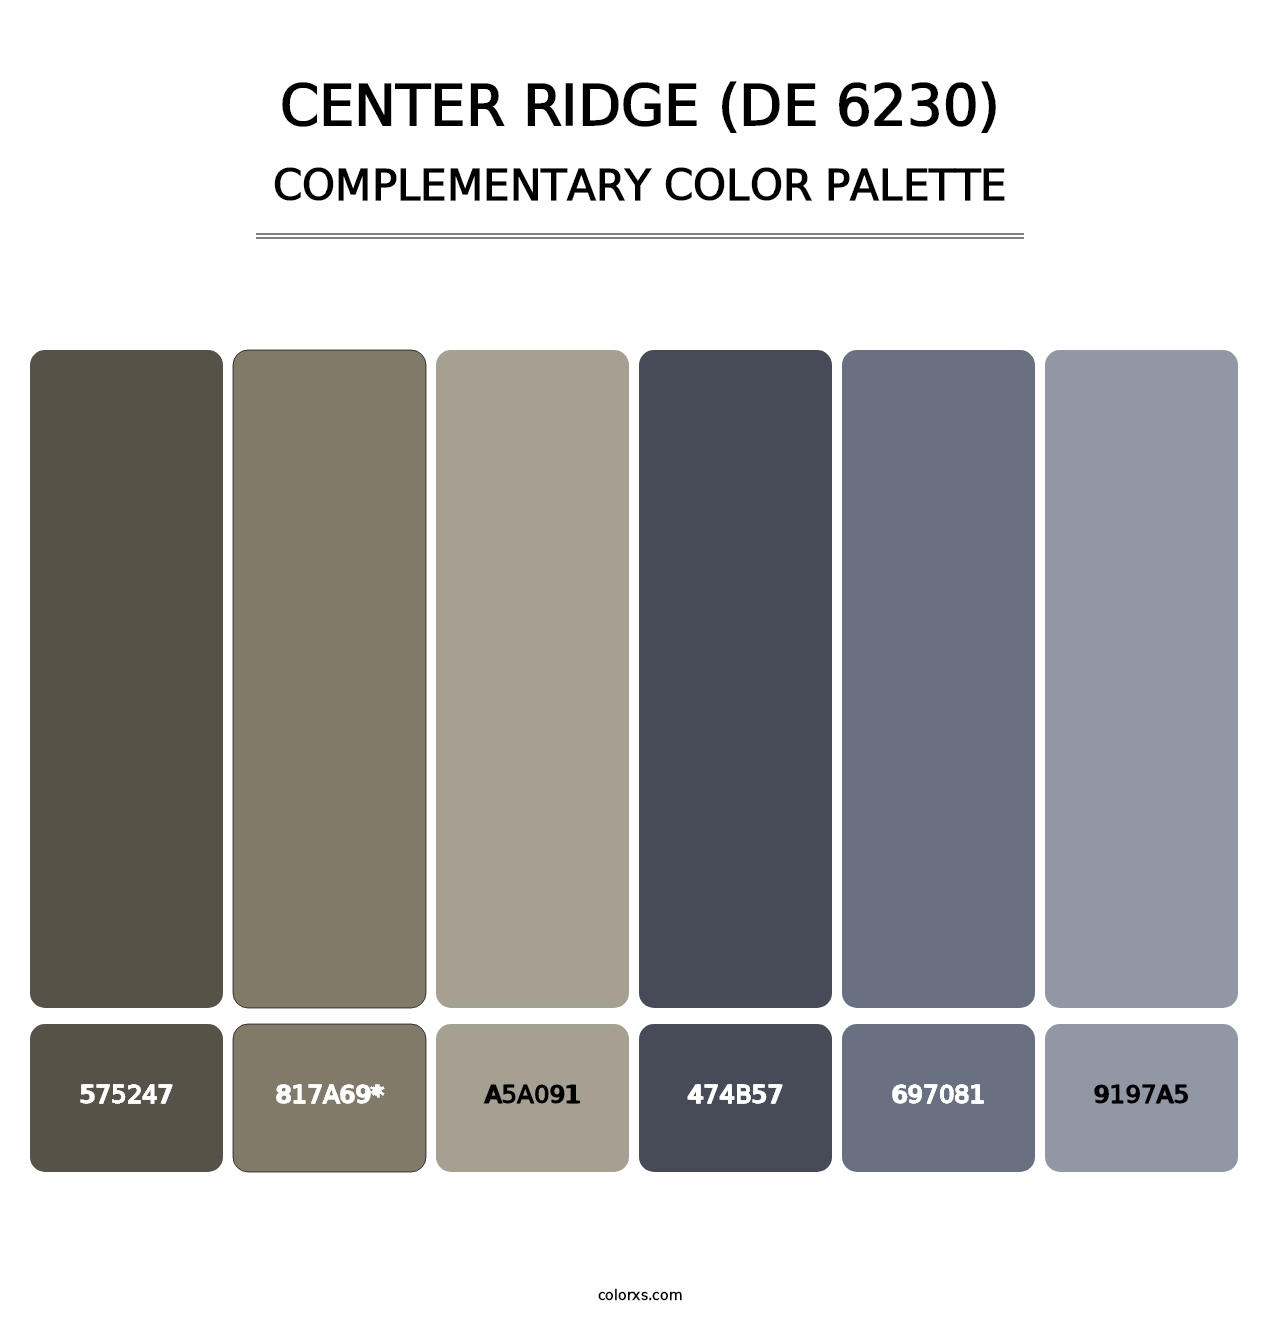 Center Ridge (DE 6230) - Complementary Color Palette